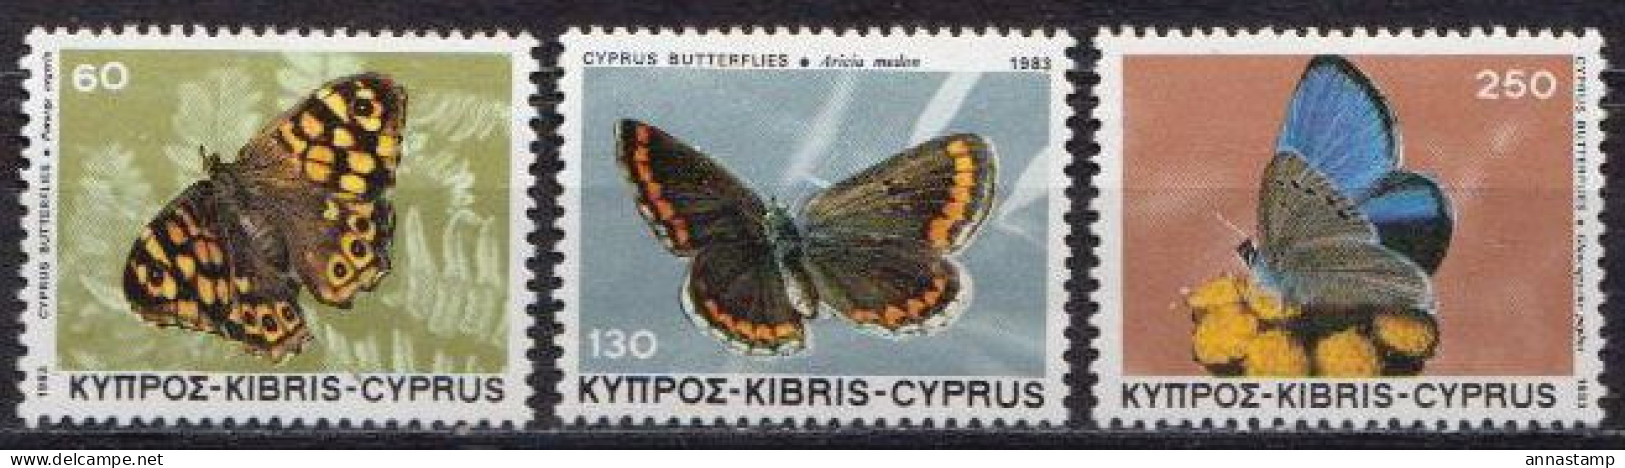 Cyprus MNH Set - Butterflies